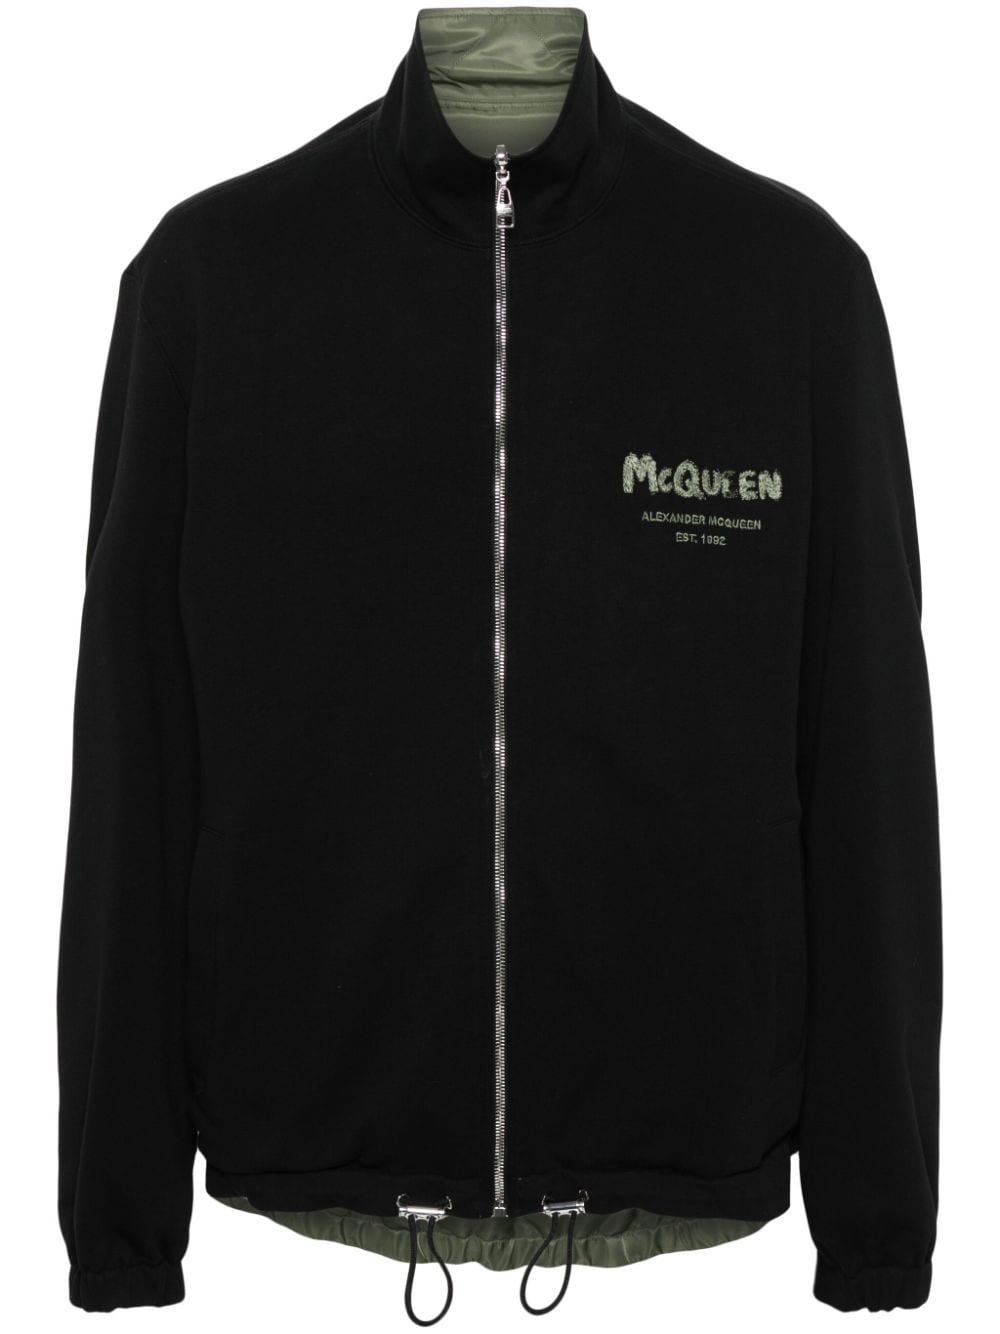 Black/khaki cotton jersey texture jacket